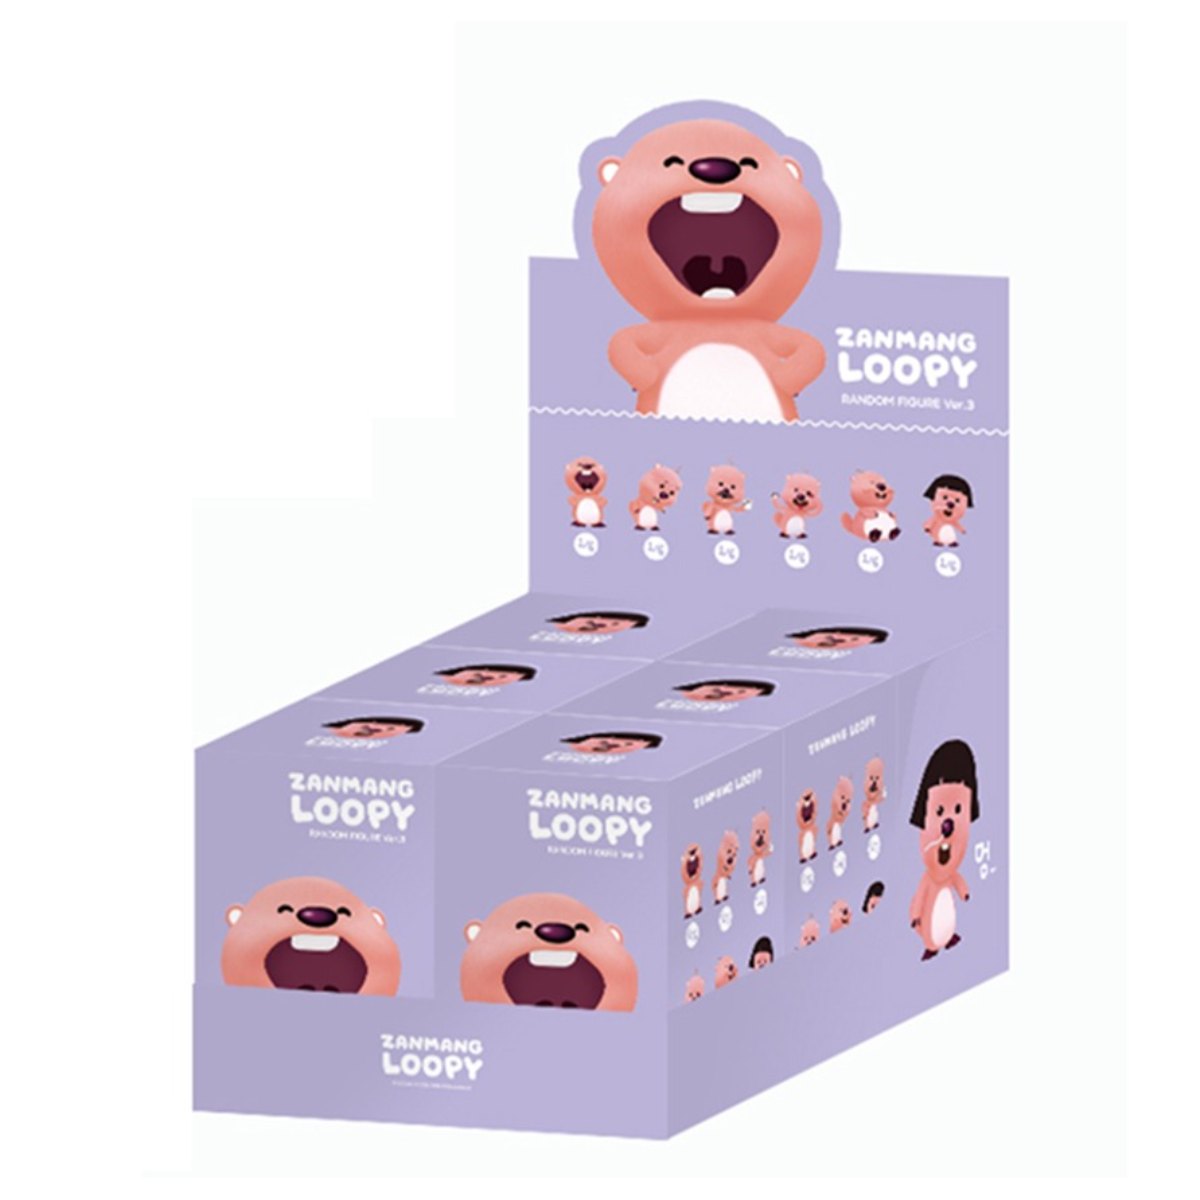 ZANMANG Loopy Ver. 3 Series-Single Box (Random)-Zanmang-Ace Cards & Collectibles